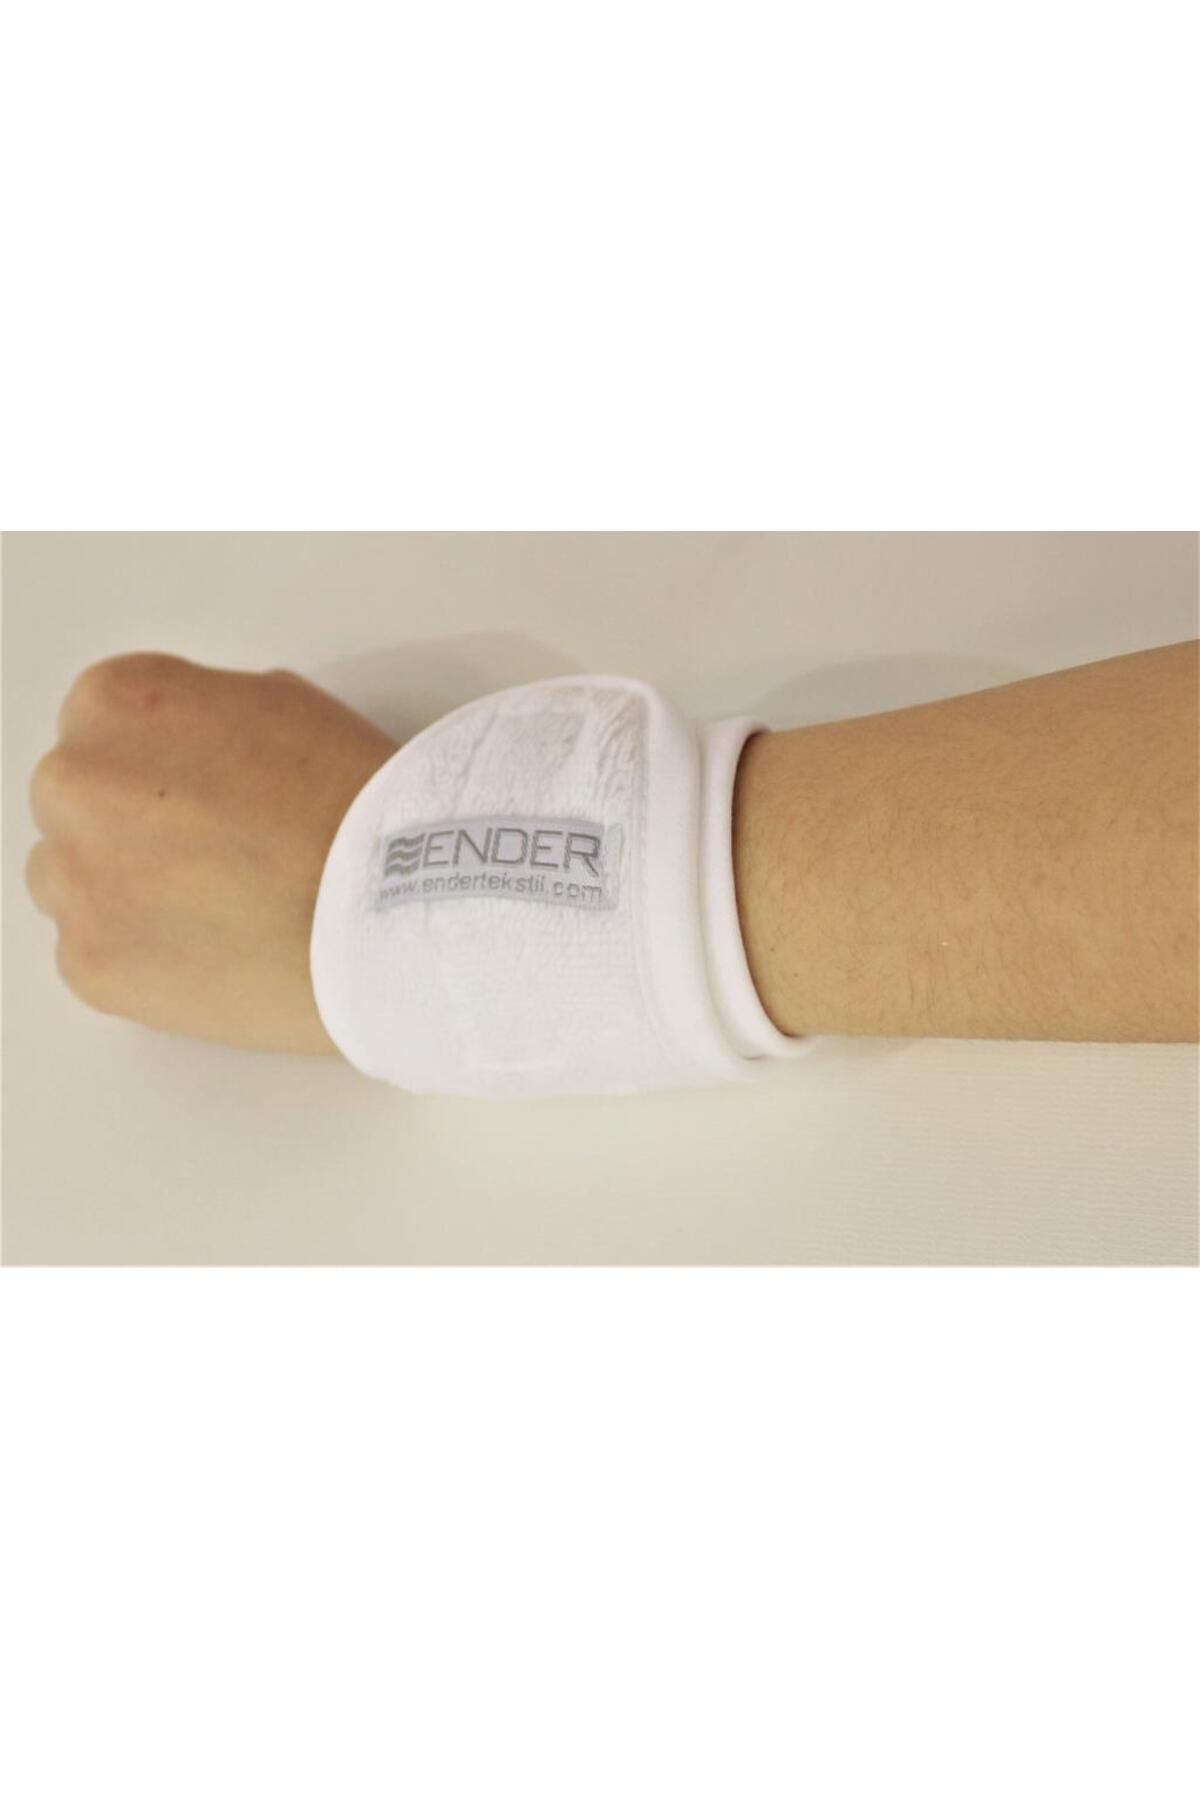 Ender Home Kadife Bilek Bandı Sporcu Havlu Bileklik Fitness Gym Tenis Bandı